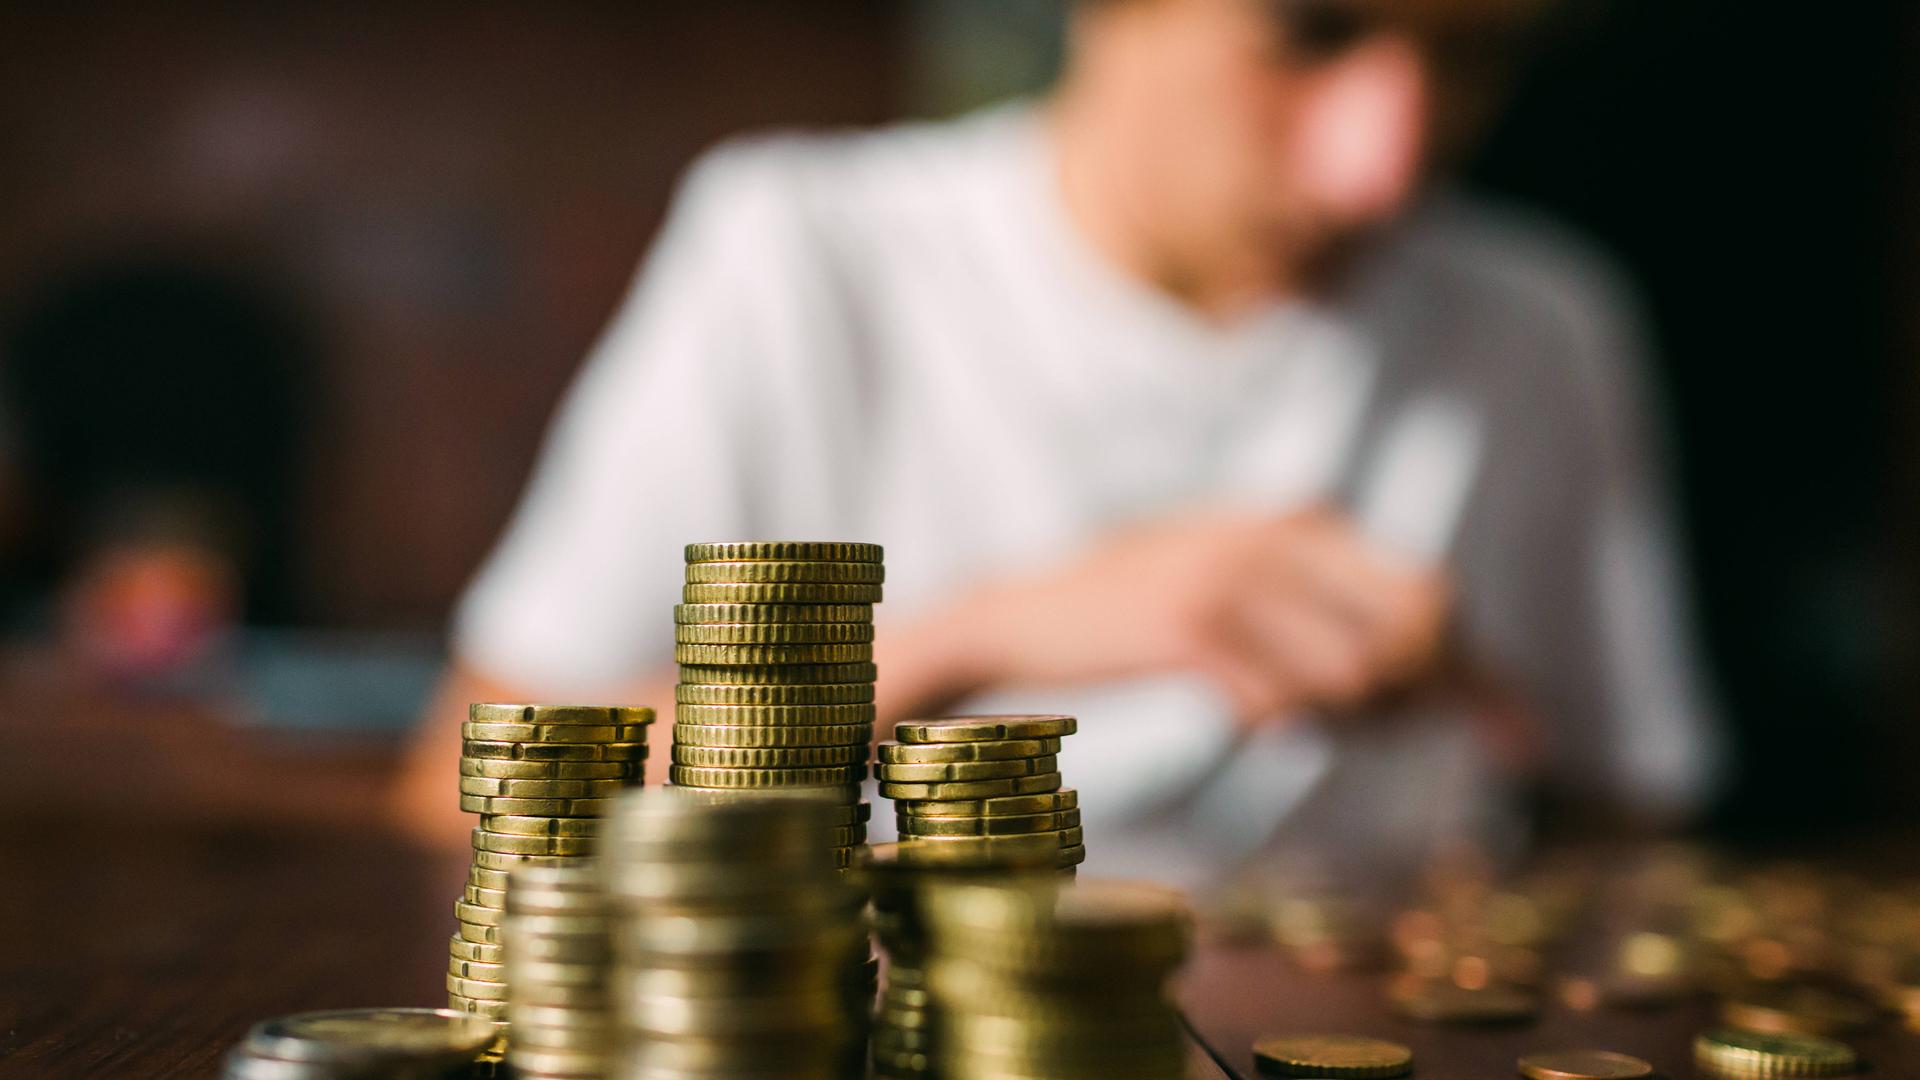 Ein Jugendlicher sitzt an einem Schreibtisch und zählt Geldmünzen.